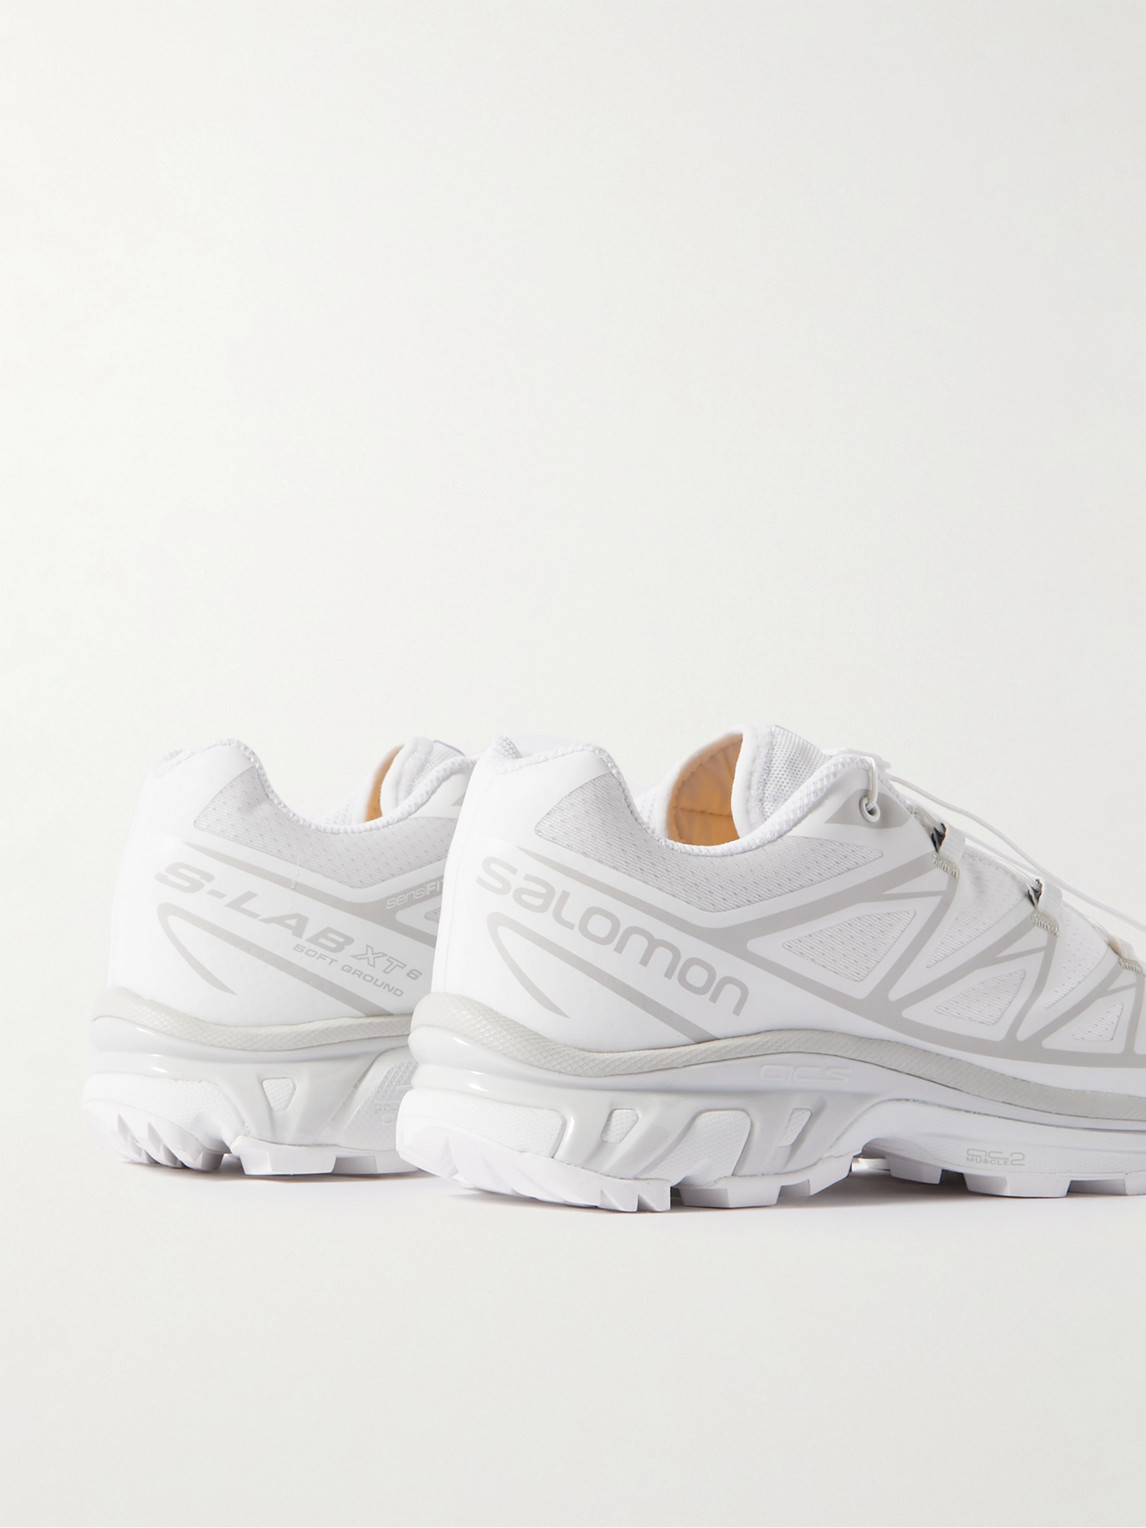 Salomon White Limited Edition Xt-6 Adv Sneakers | ModeSens